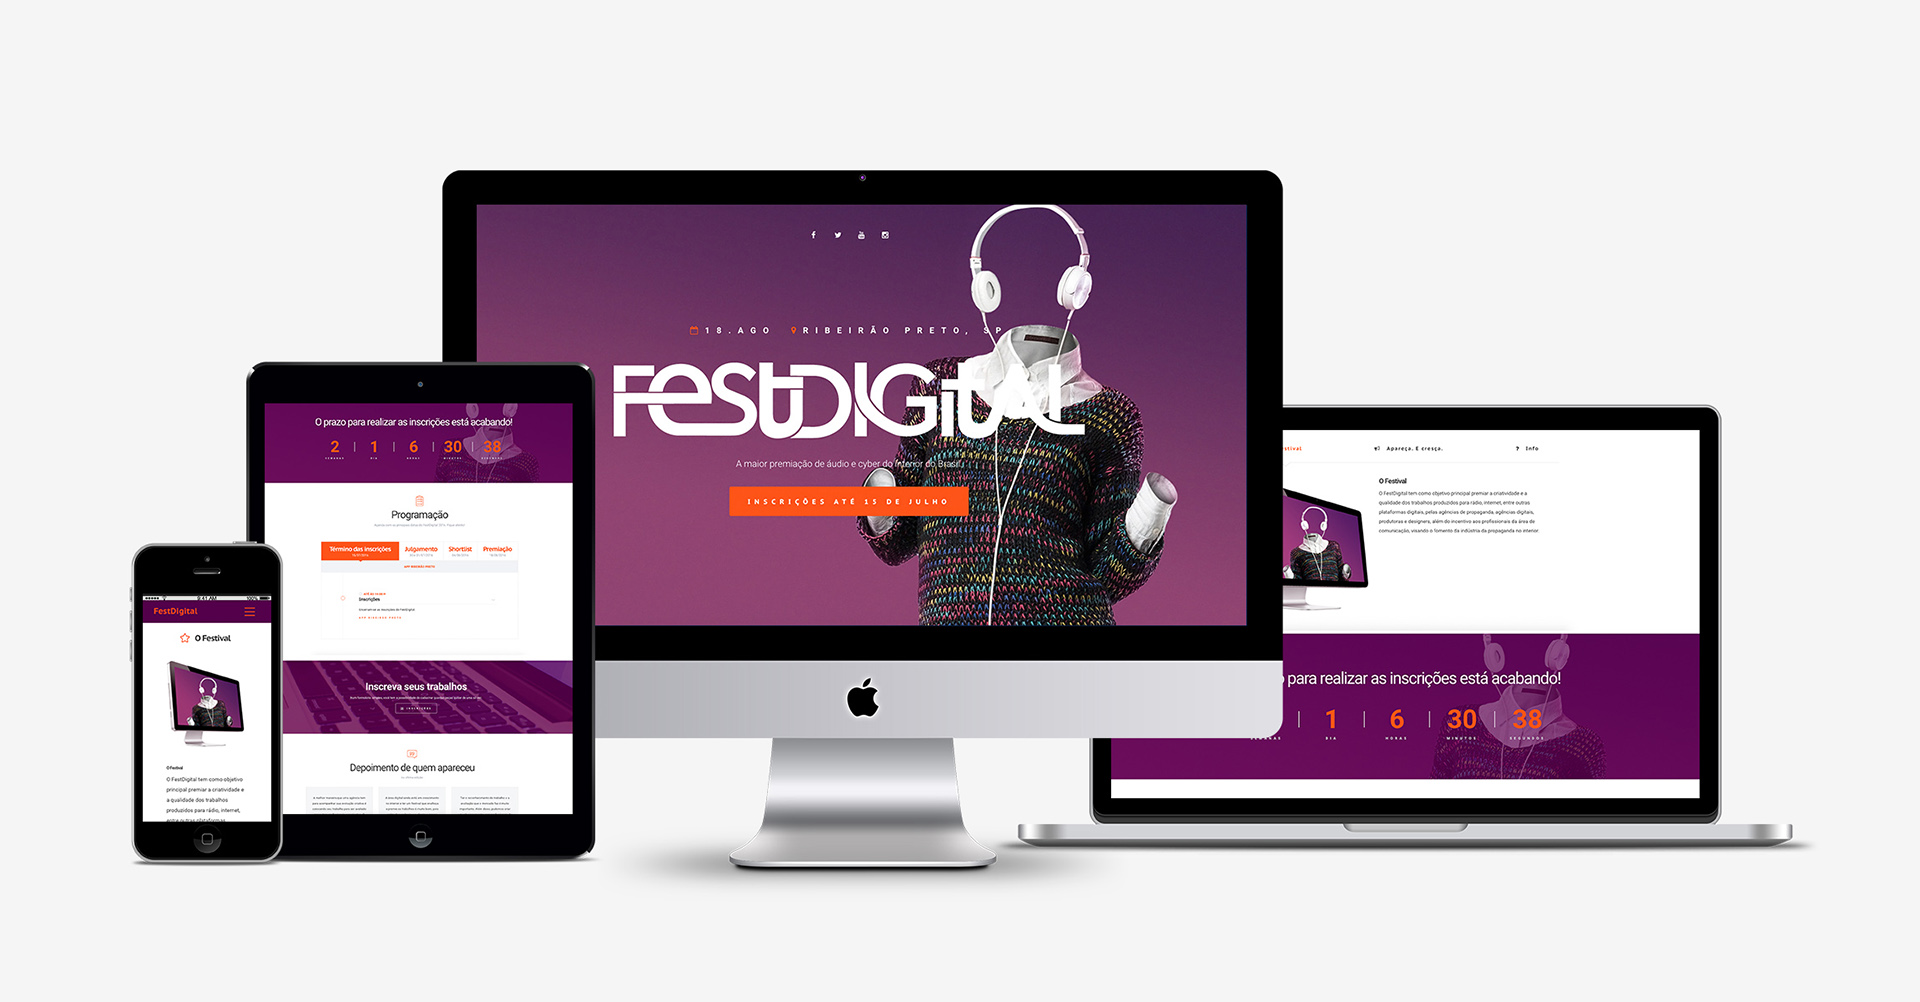 Festdigital - site - Tuíta